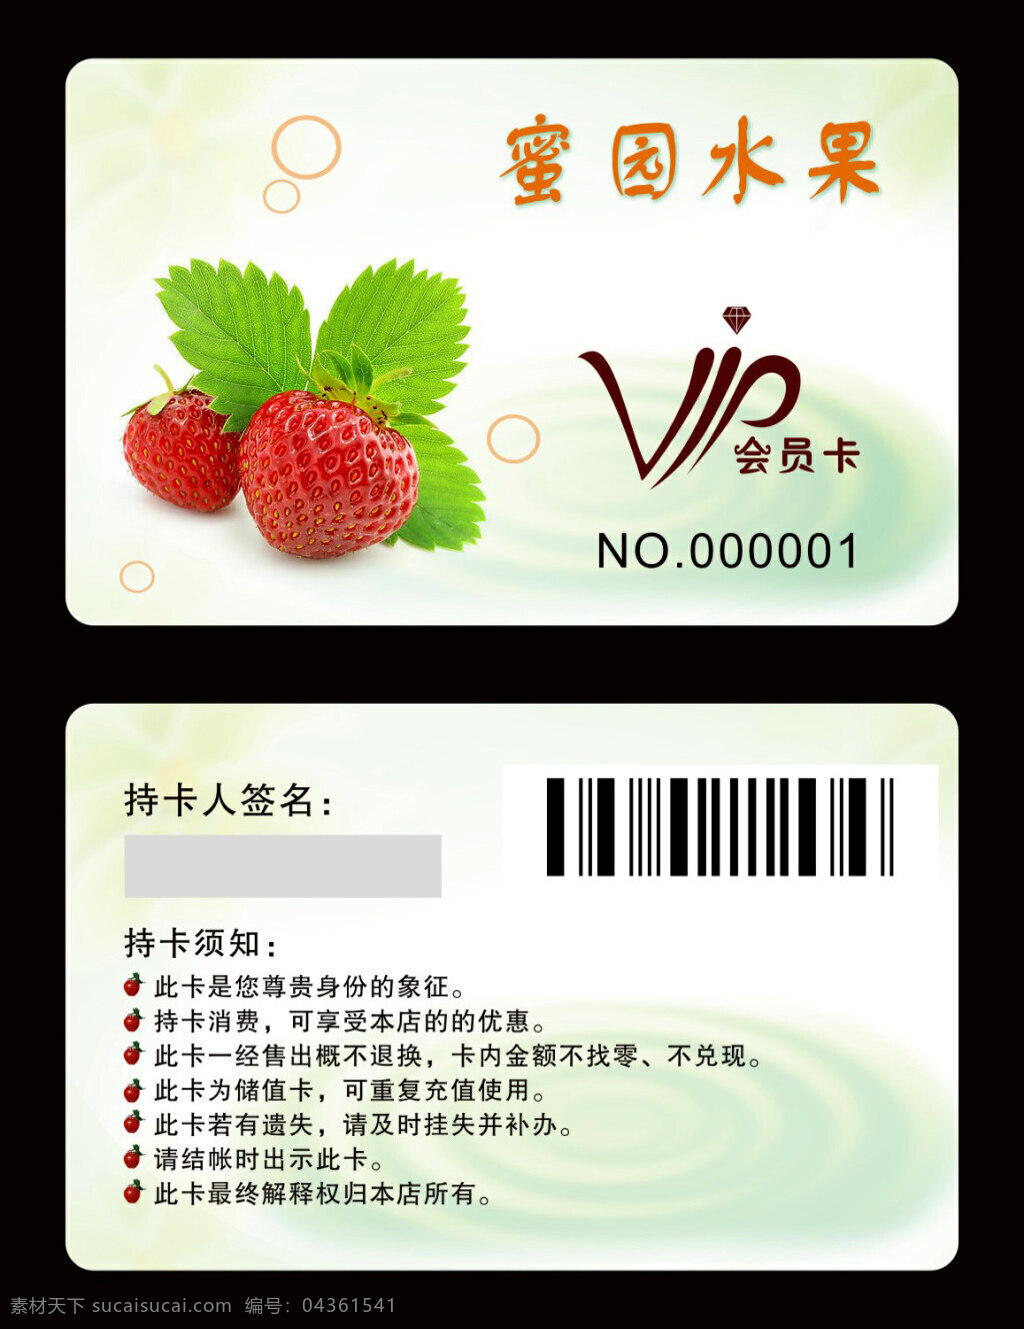 水果店会员卡 水果会员卡 会员卡 水果 水果vip卡 水果店 vip 卡